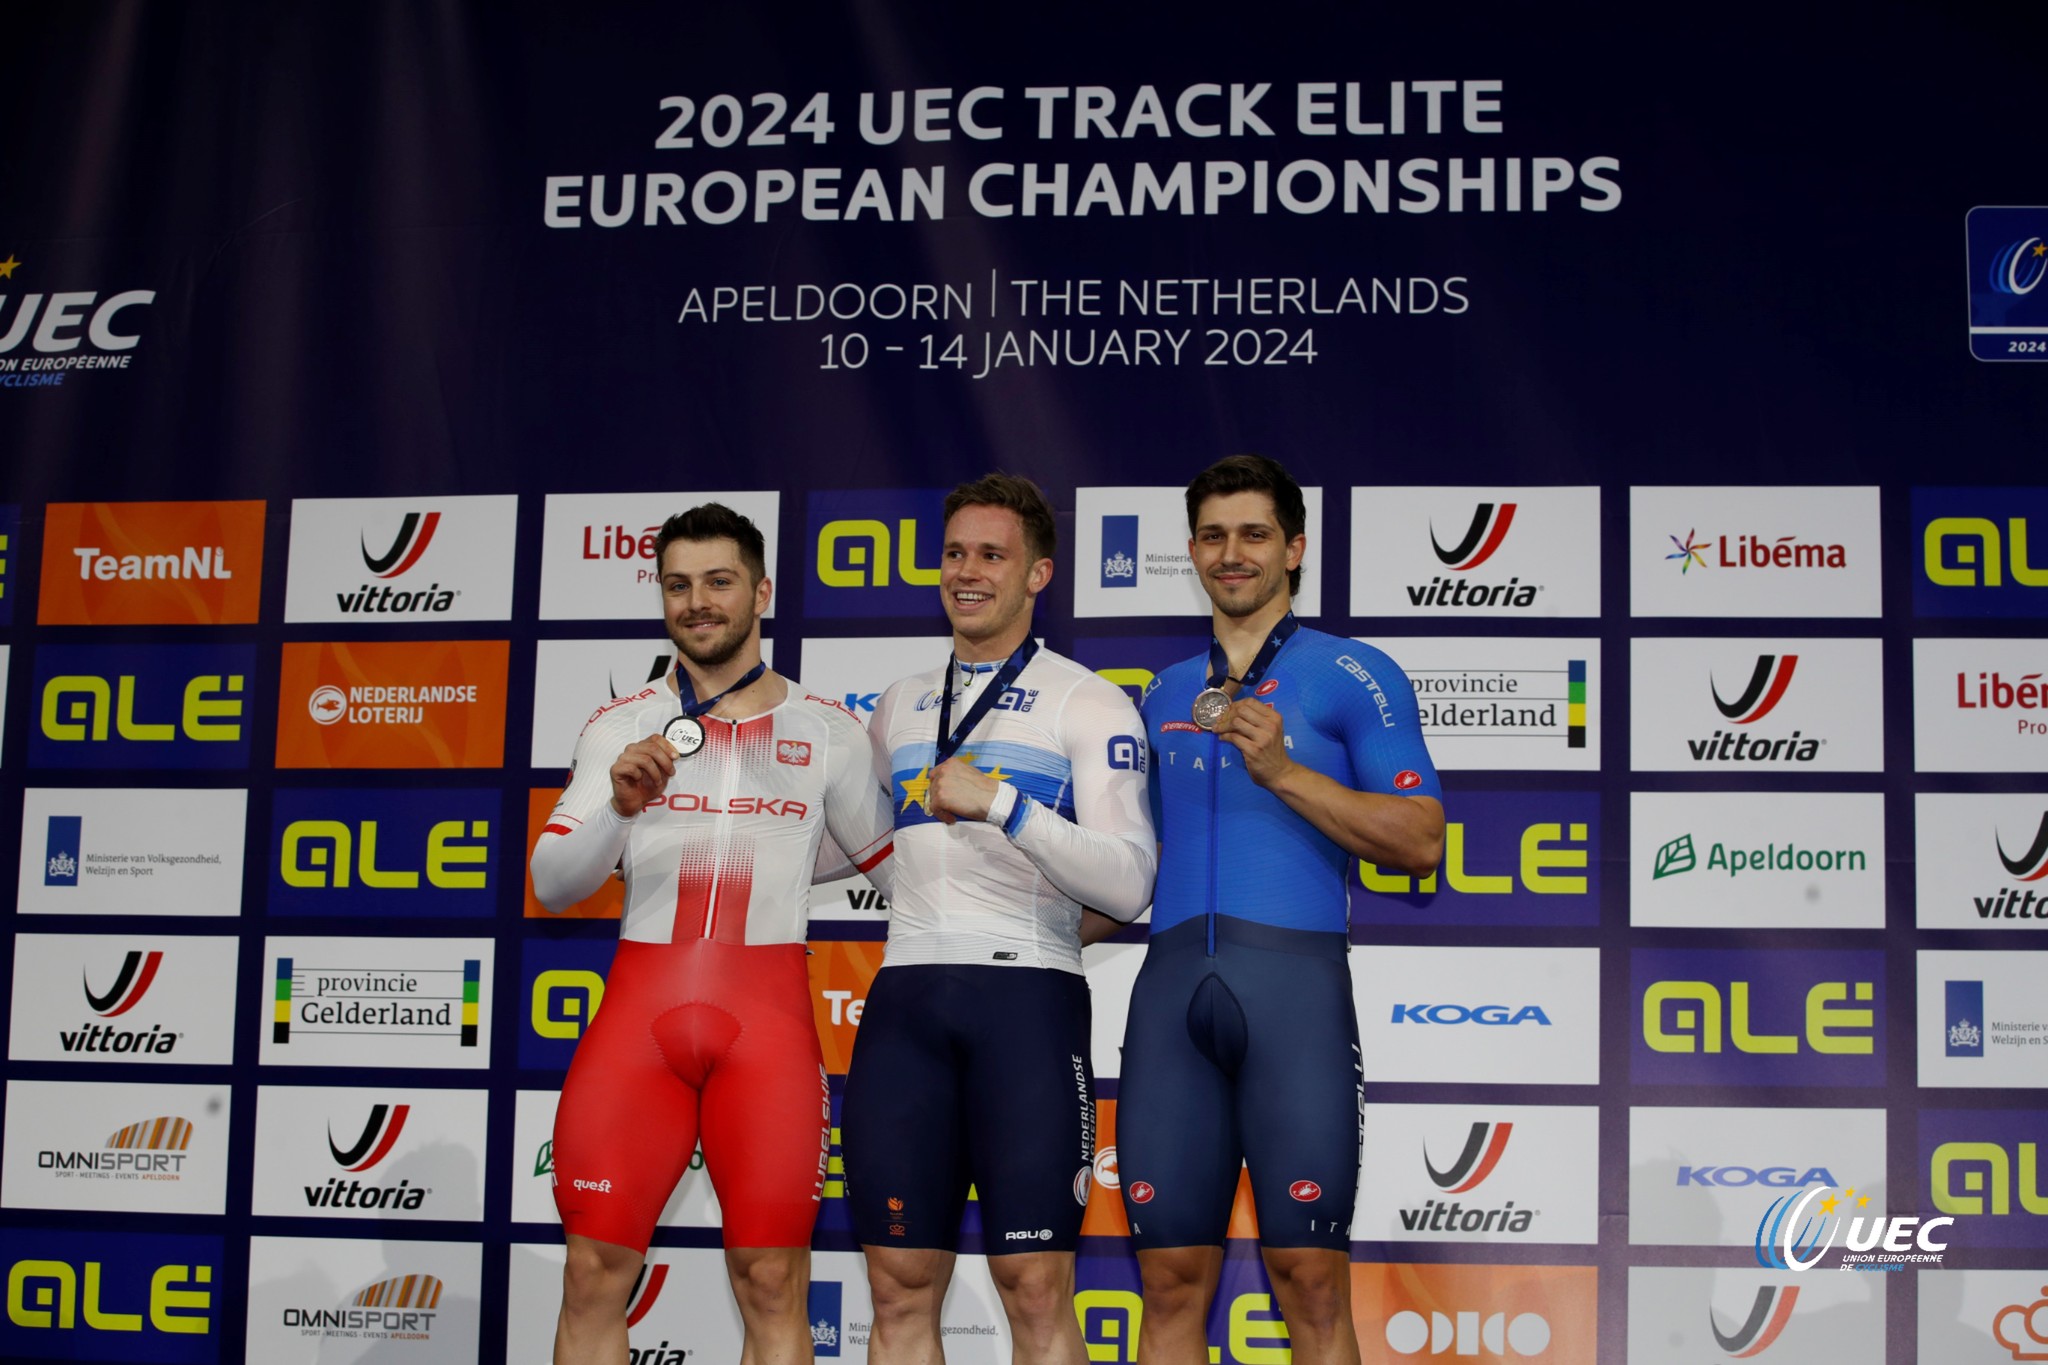 Харри Лаврейсен опередил всех в кейрине на чемпионате Европы по трековому велоспорту